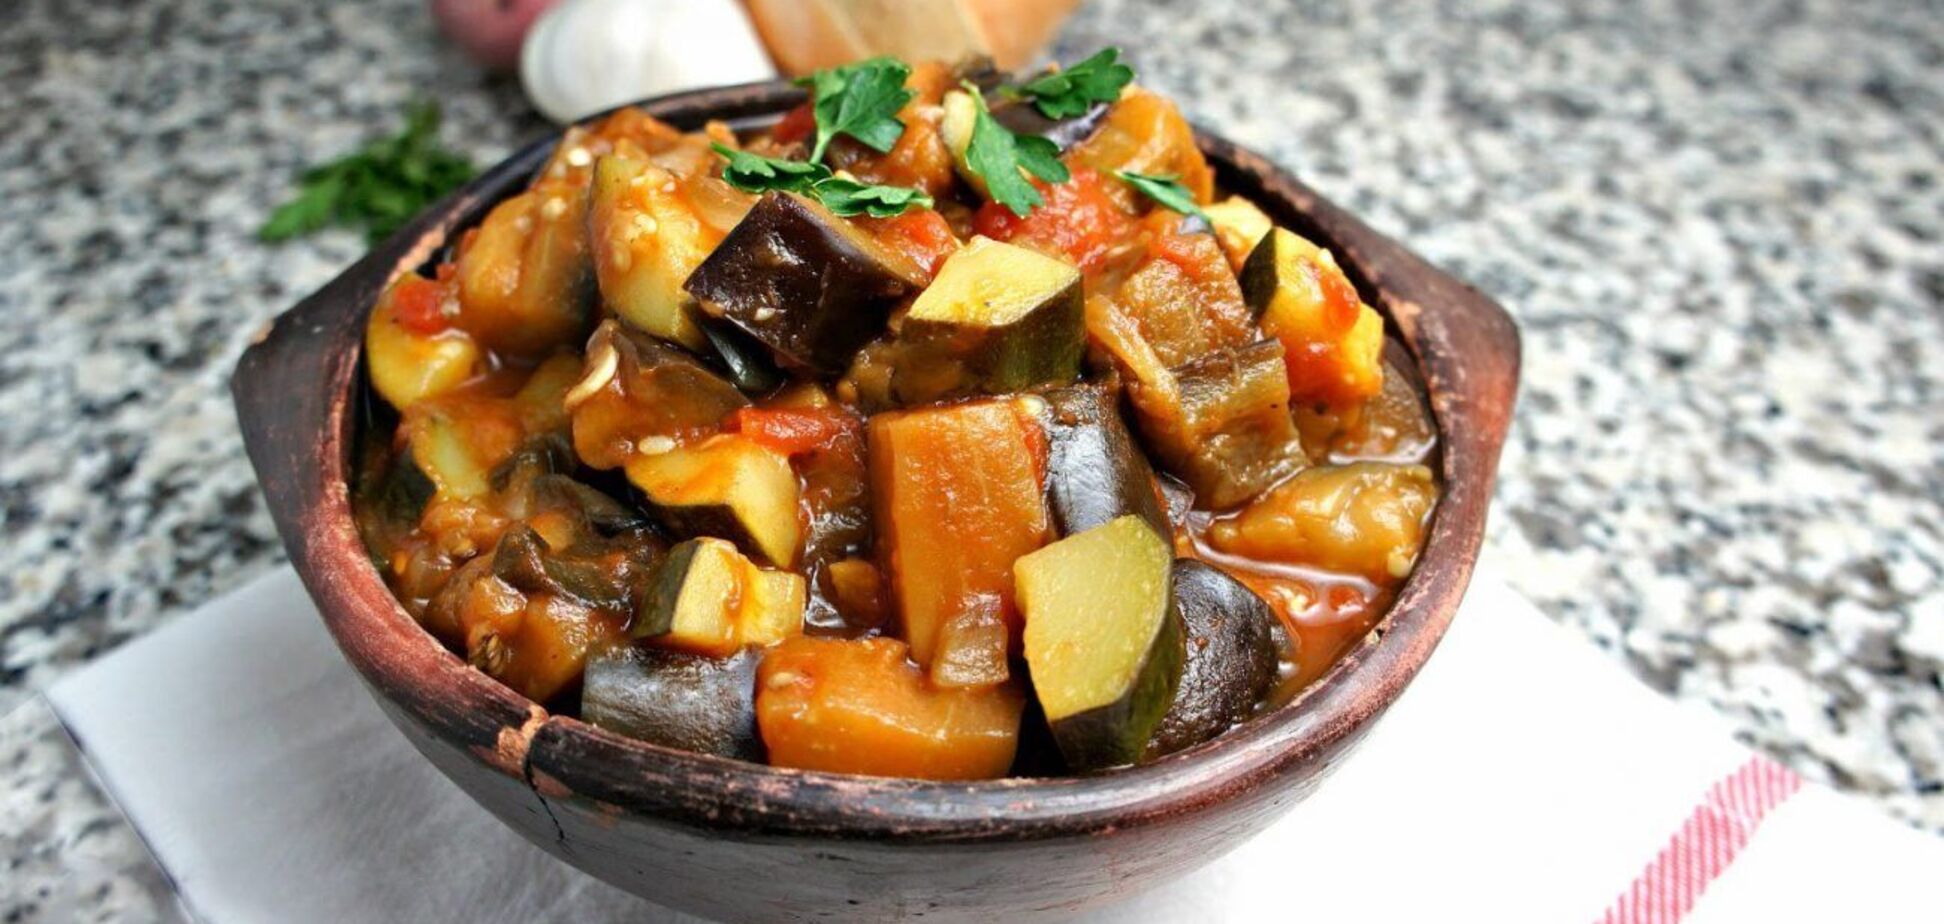 Овощное рагу из баклажанов и кабачков: что сделает блюдо нежным и ароматным